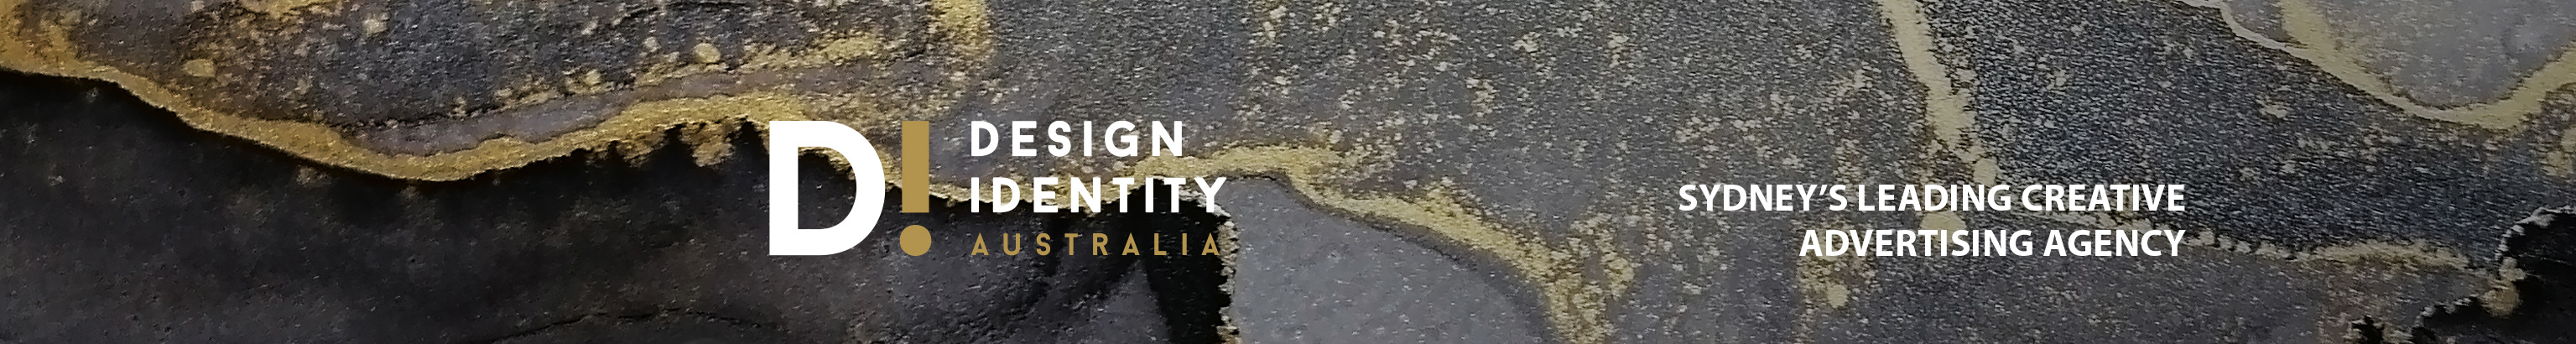 Banner de perfil de Design Identity Australia